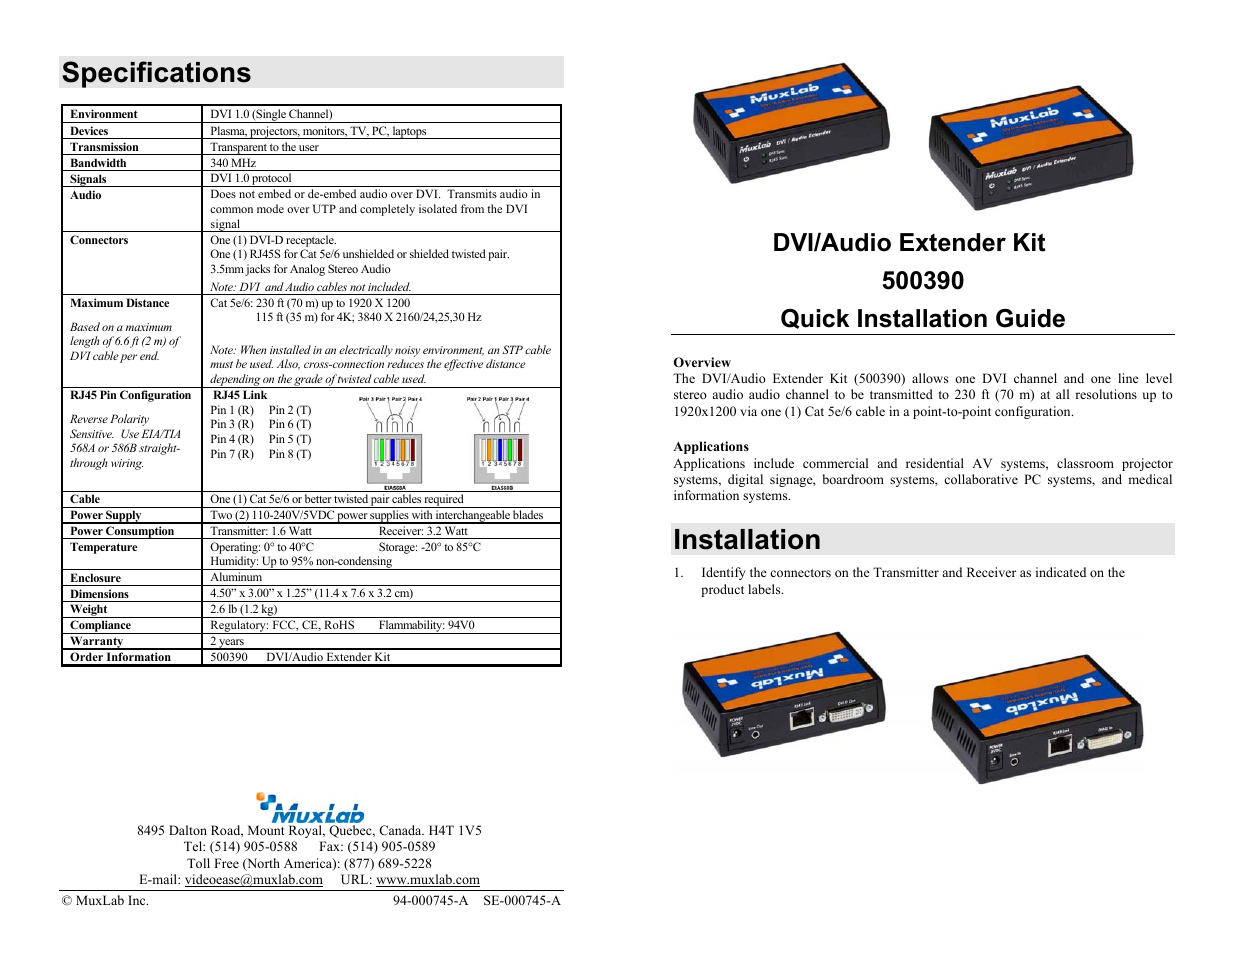 DVI/Audio Extender Kit